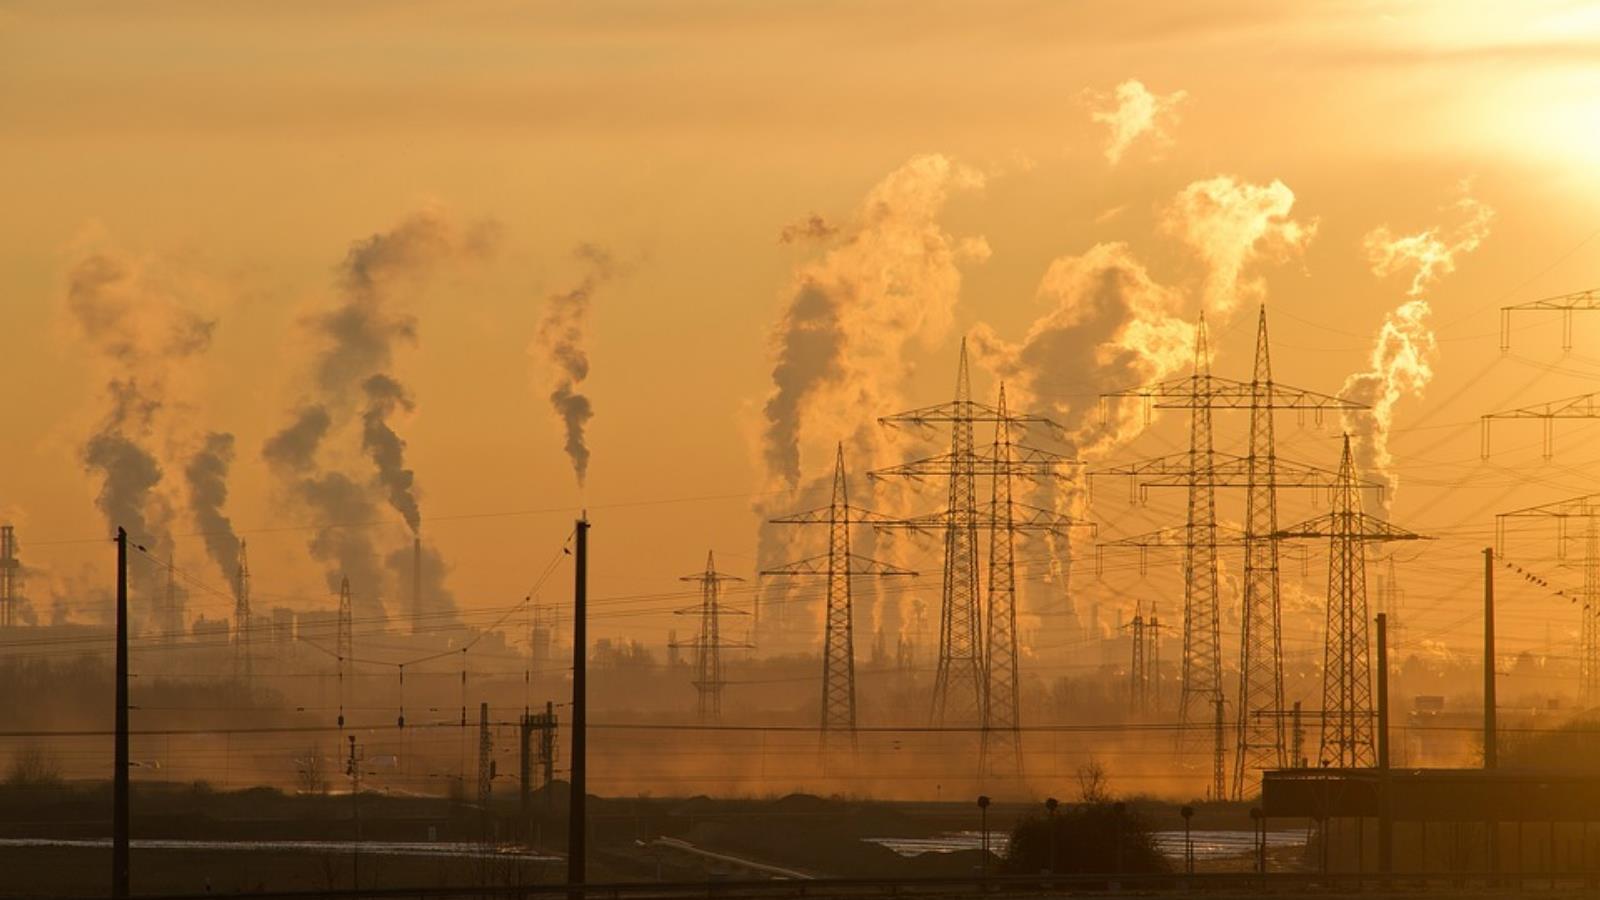 ‪حوالي عشرين تريليون دولار يمكن أن يخسرها القطاع الصناعي نتيجة التغير المناخي‬  (بيكسابي)